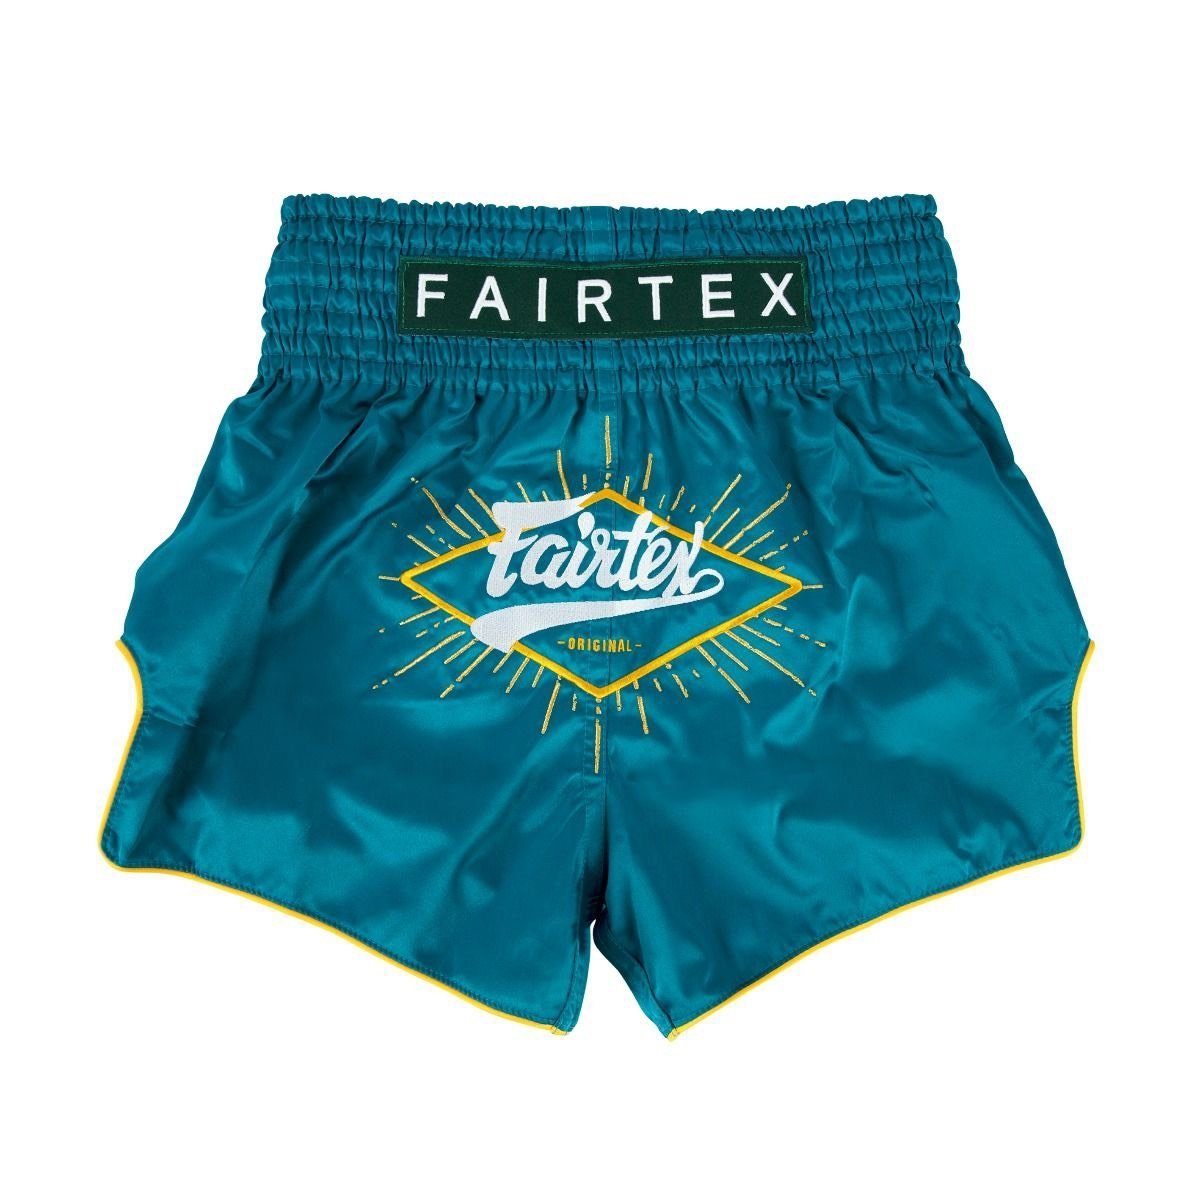 Fairtex Shorts BS1907 "FOCUS" Fairtex